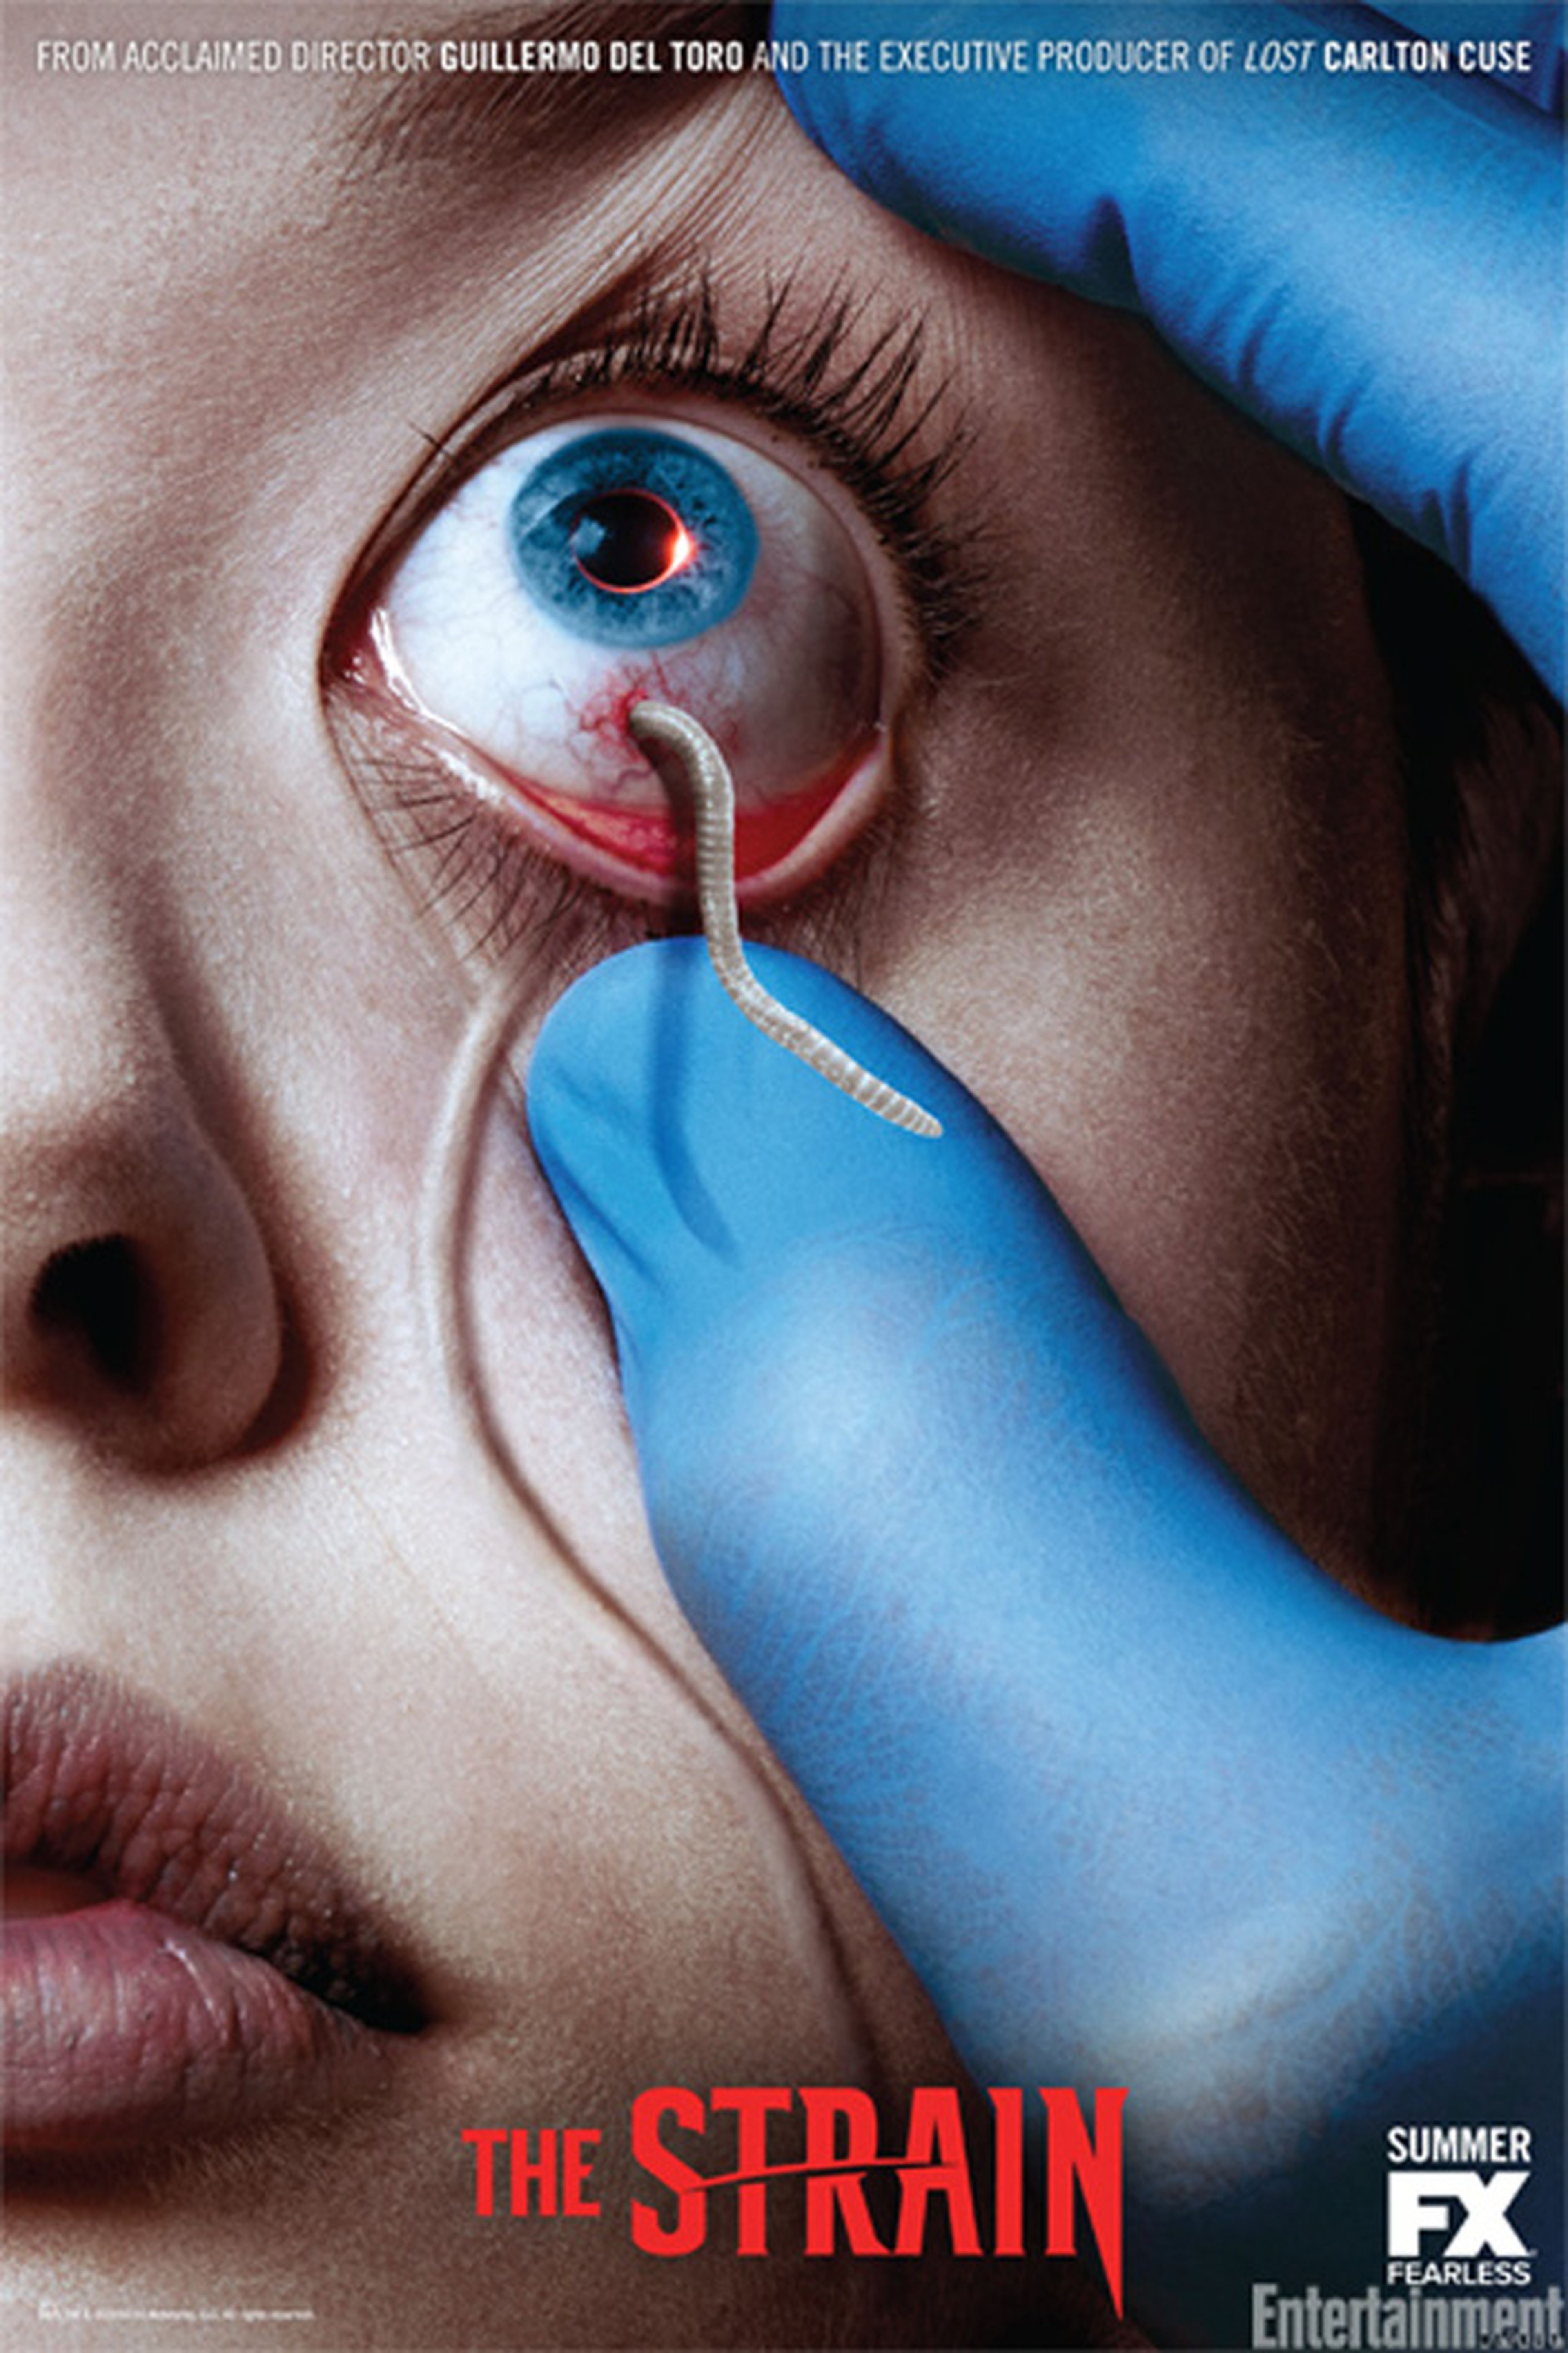 Retiran los carteles de la nueva serie de Guillermo del Toro, The Strain, por herir sensibilidades